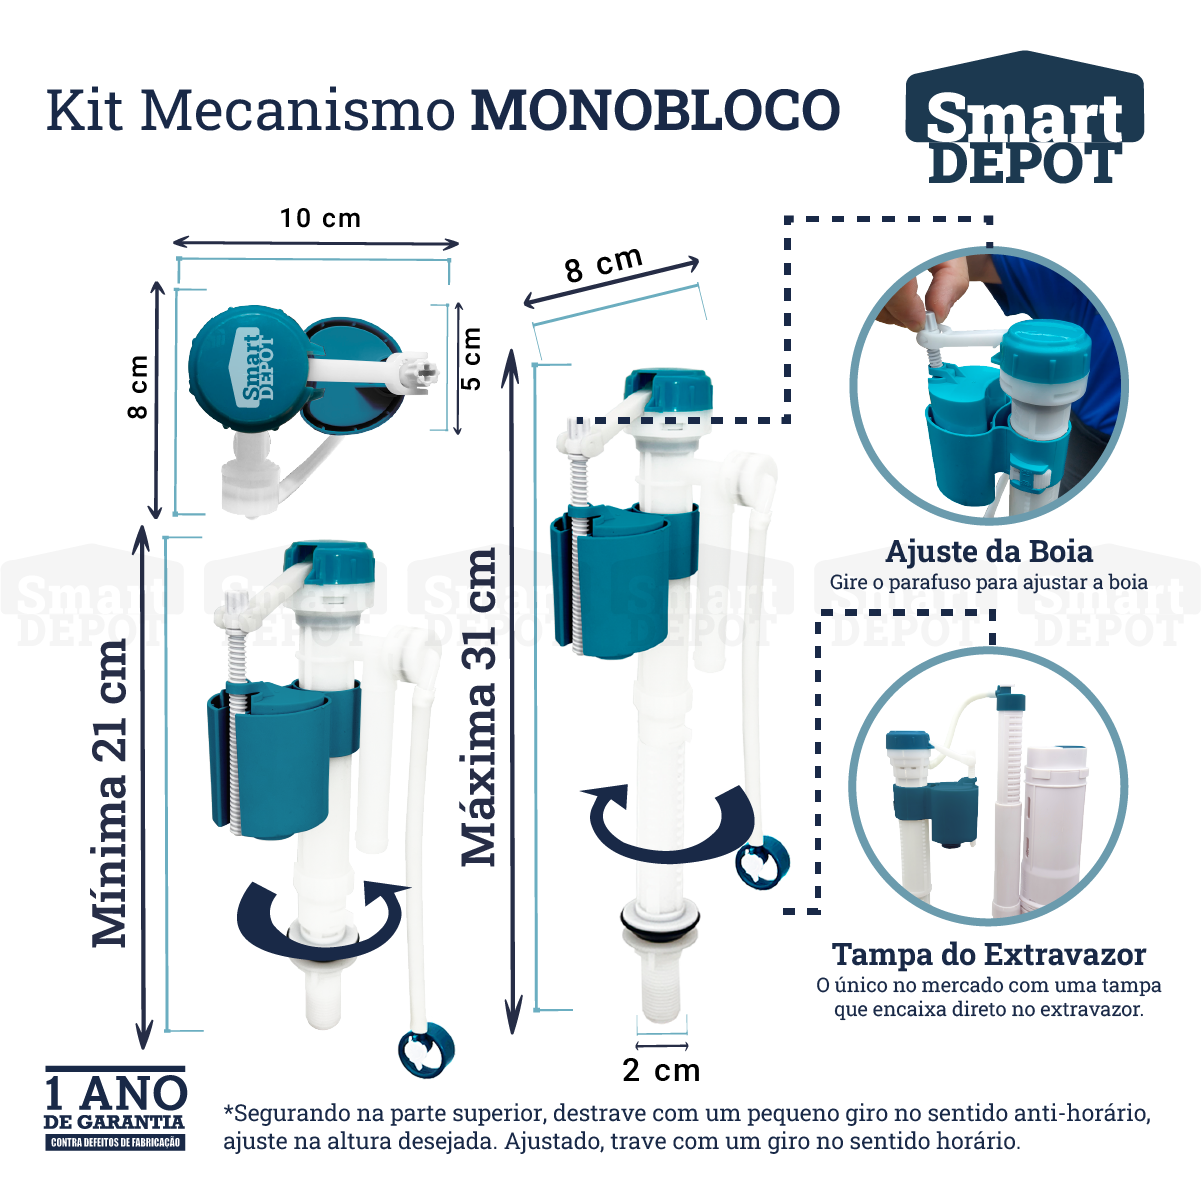 Kit Mecanismo de Descarga Caixa Acoplada Monobloco Completo Smart Depot com Botão Superior Duplo - 7